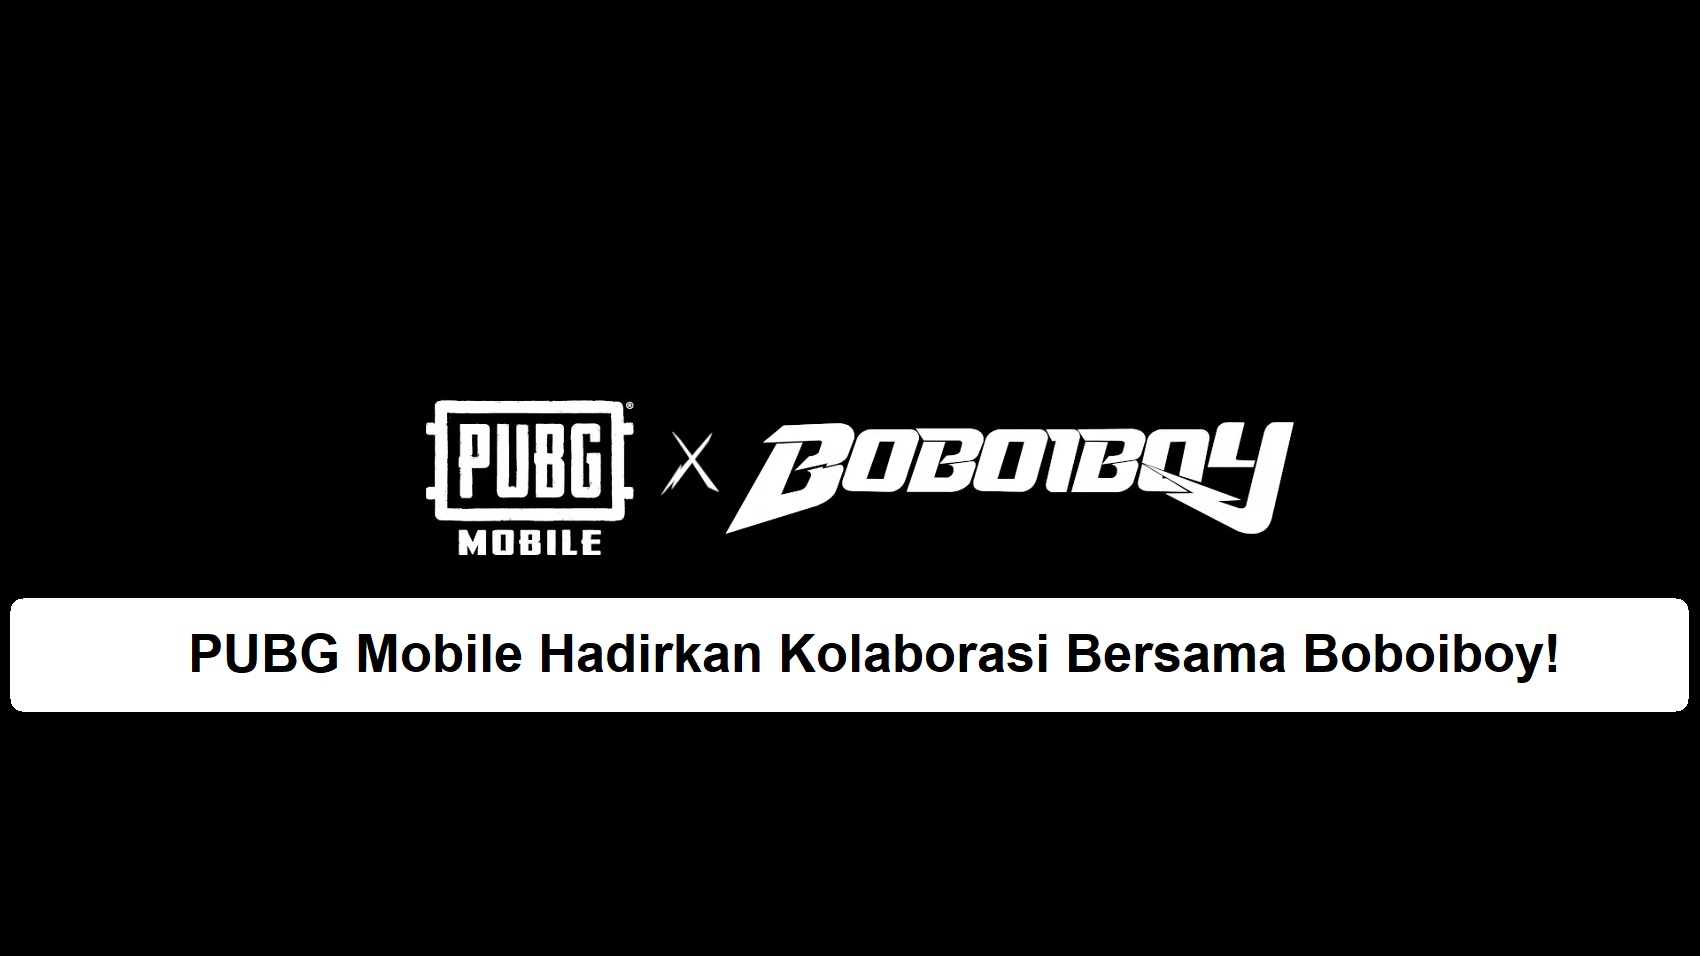 PUBG Mobile Hadirkan Kolaborasi Bersama Boboiboy!